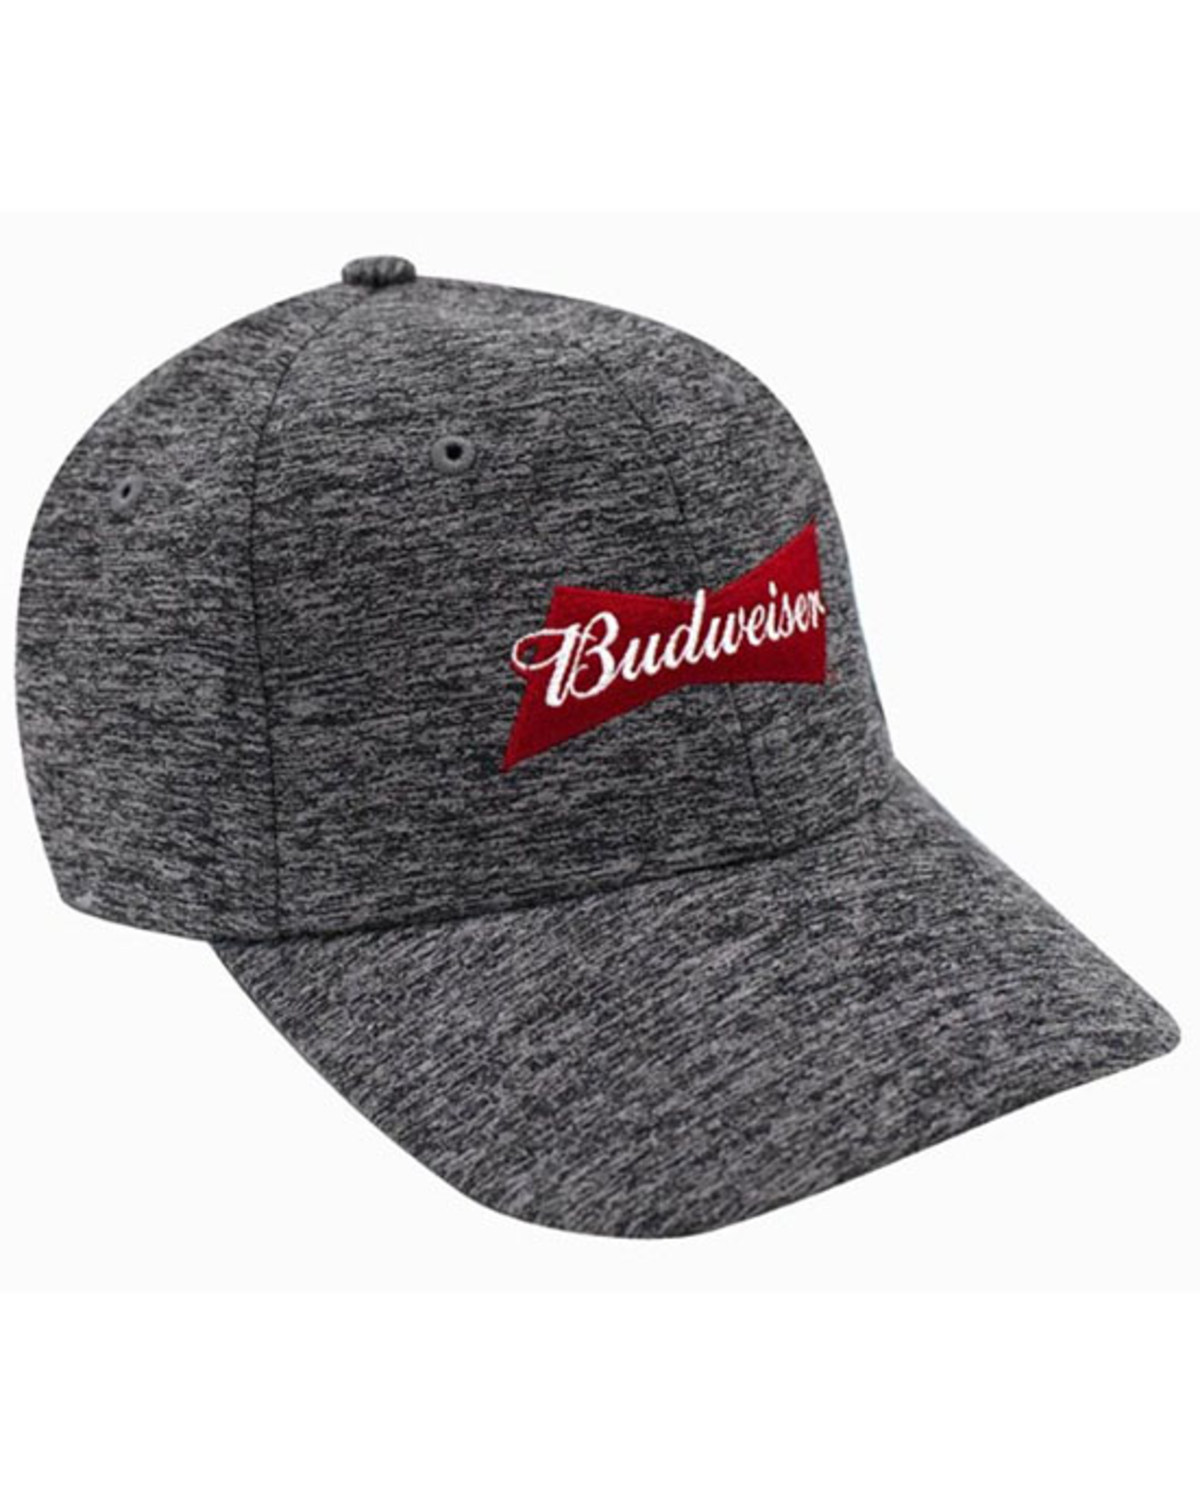 H Bar C Men's Budweiser Cationic Logo Ball Cap